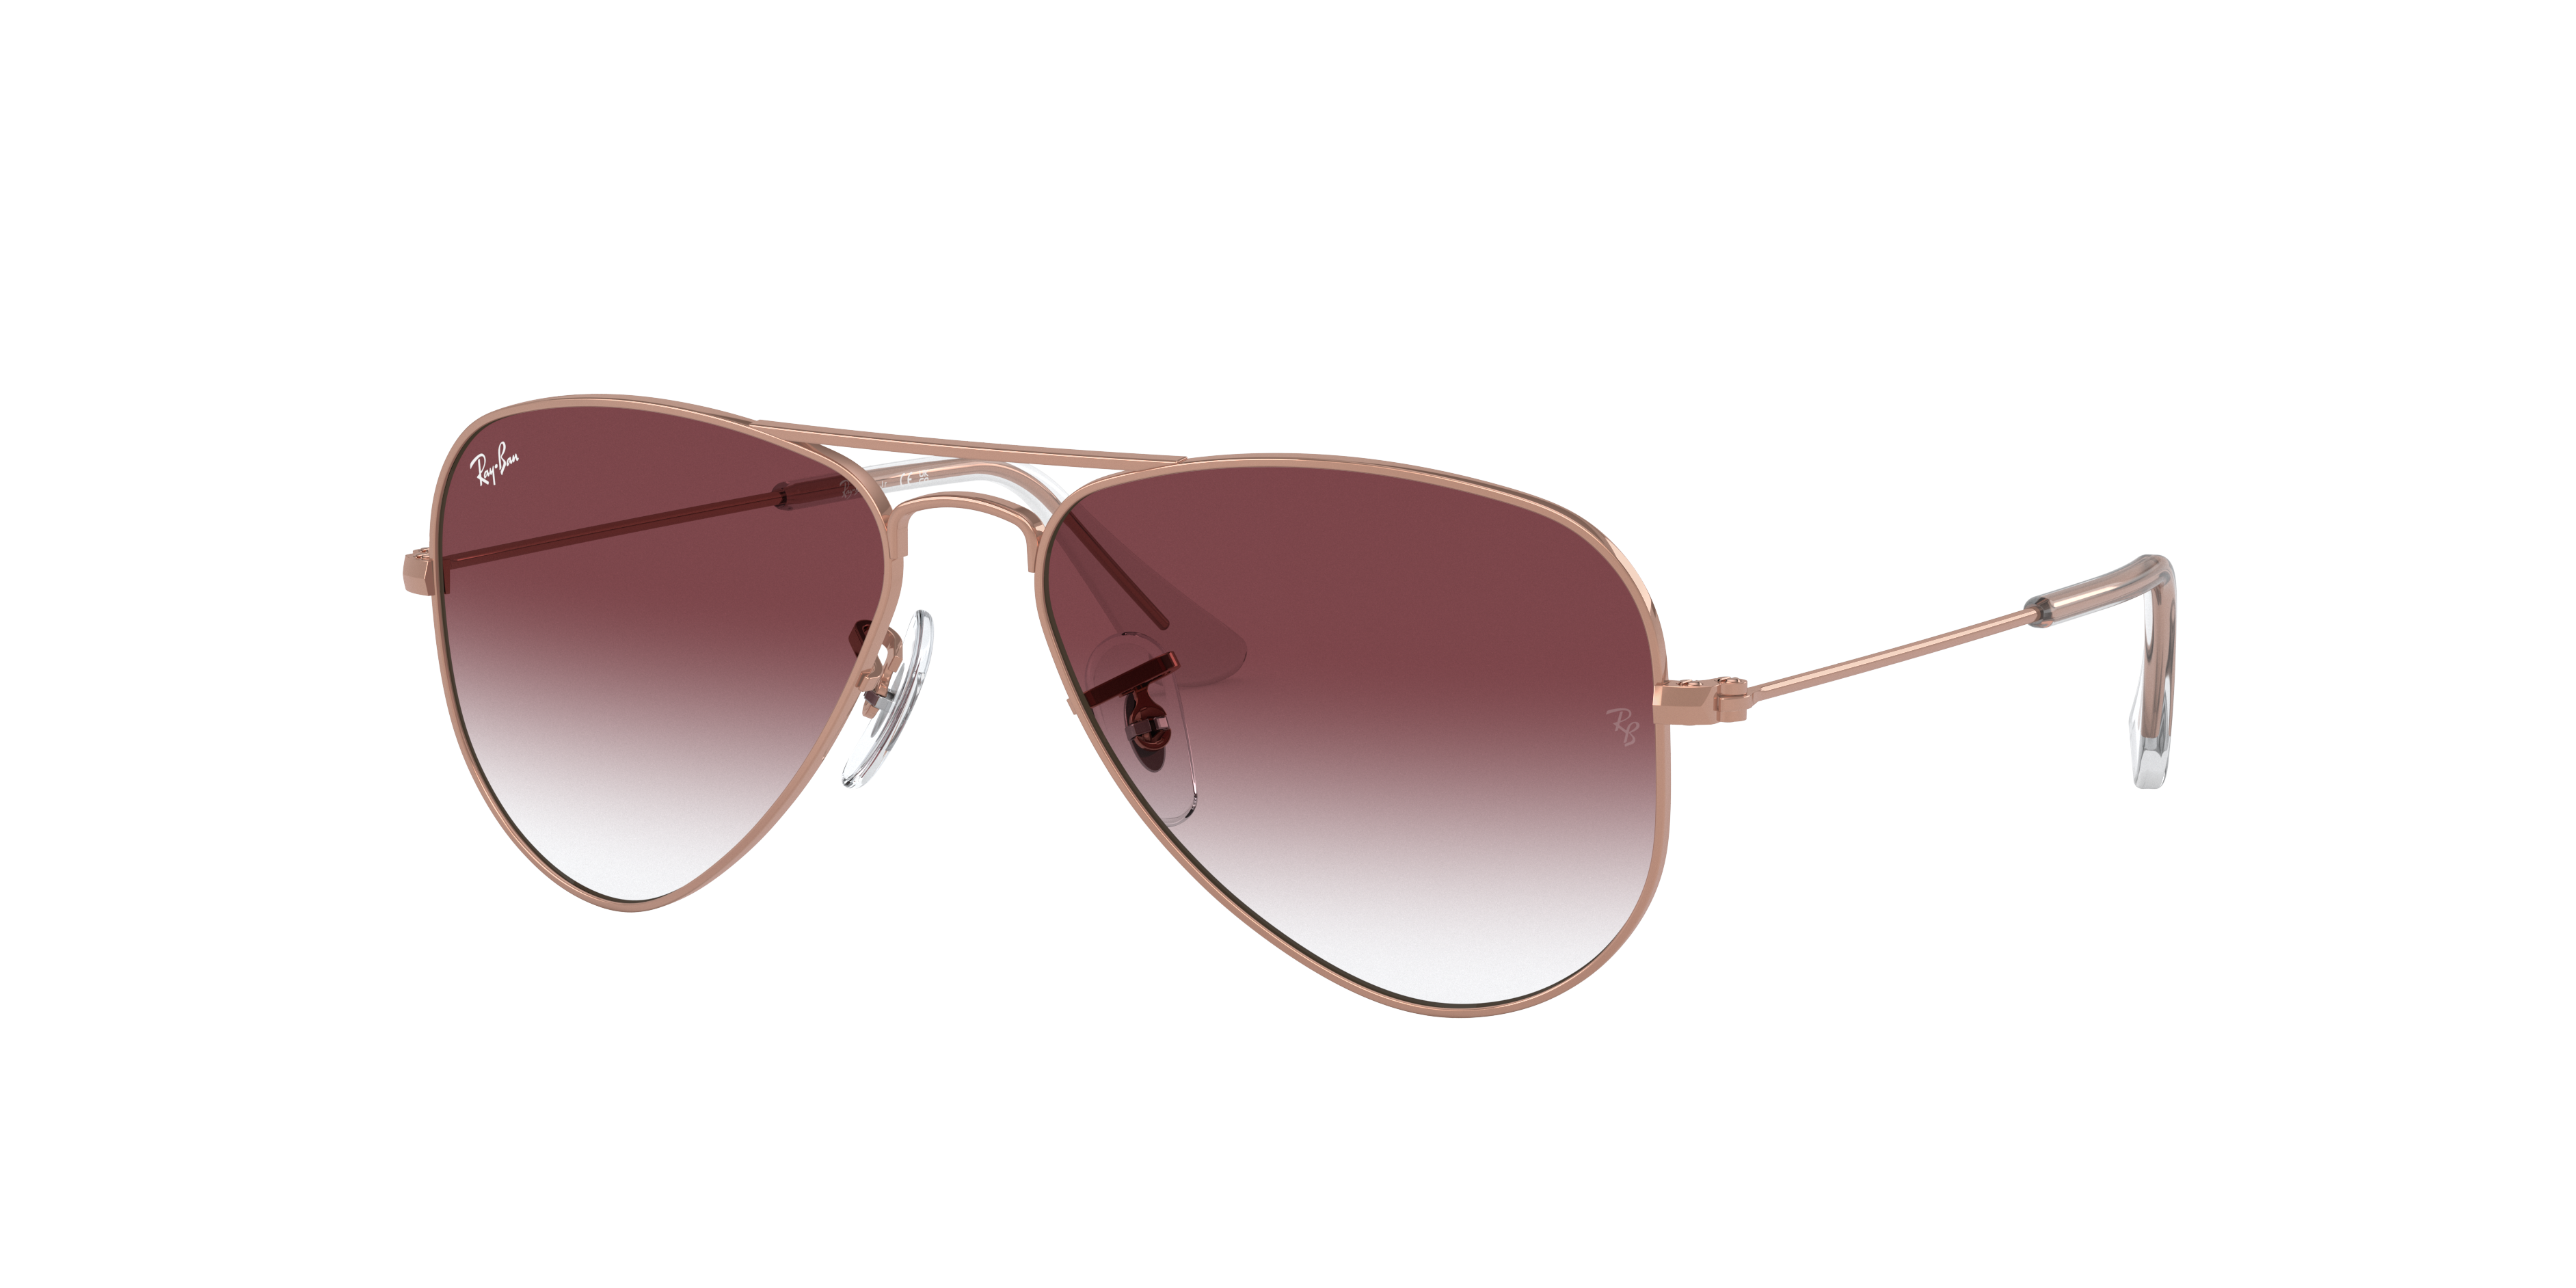 Óculos de Sol Ray-Ban estilo aviator.